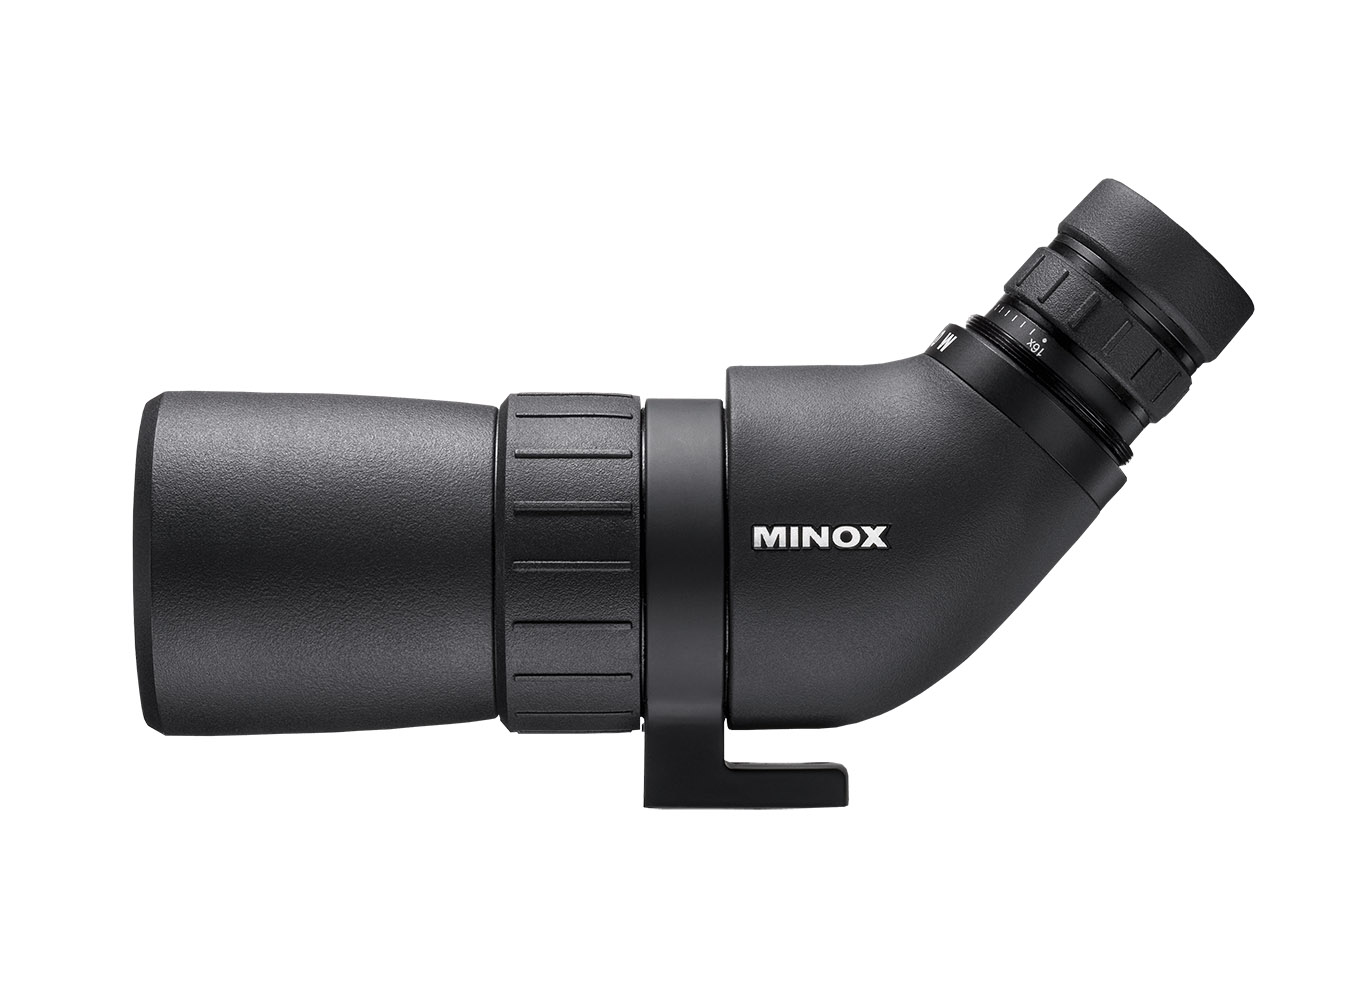 Minox MD 50 W